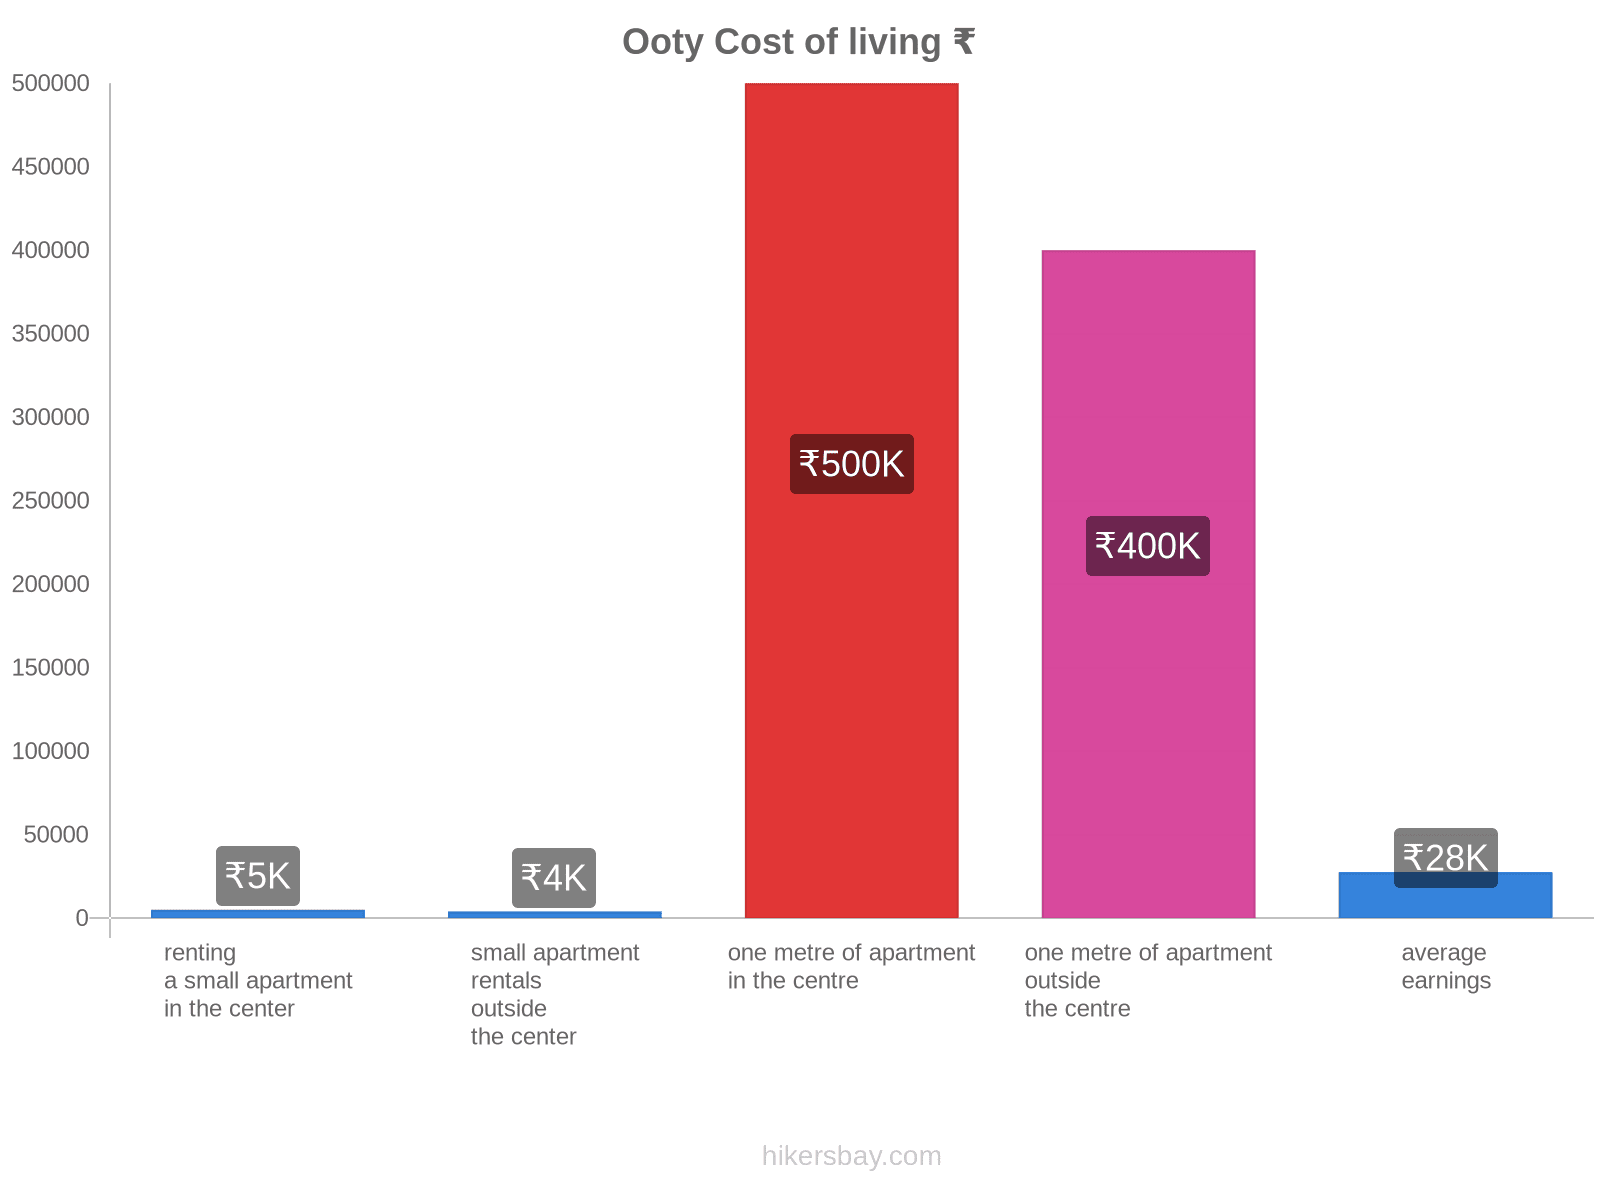 Ooty cost of living hikersbay.com